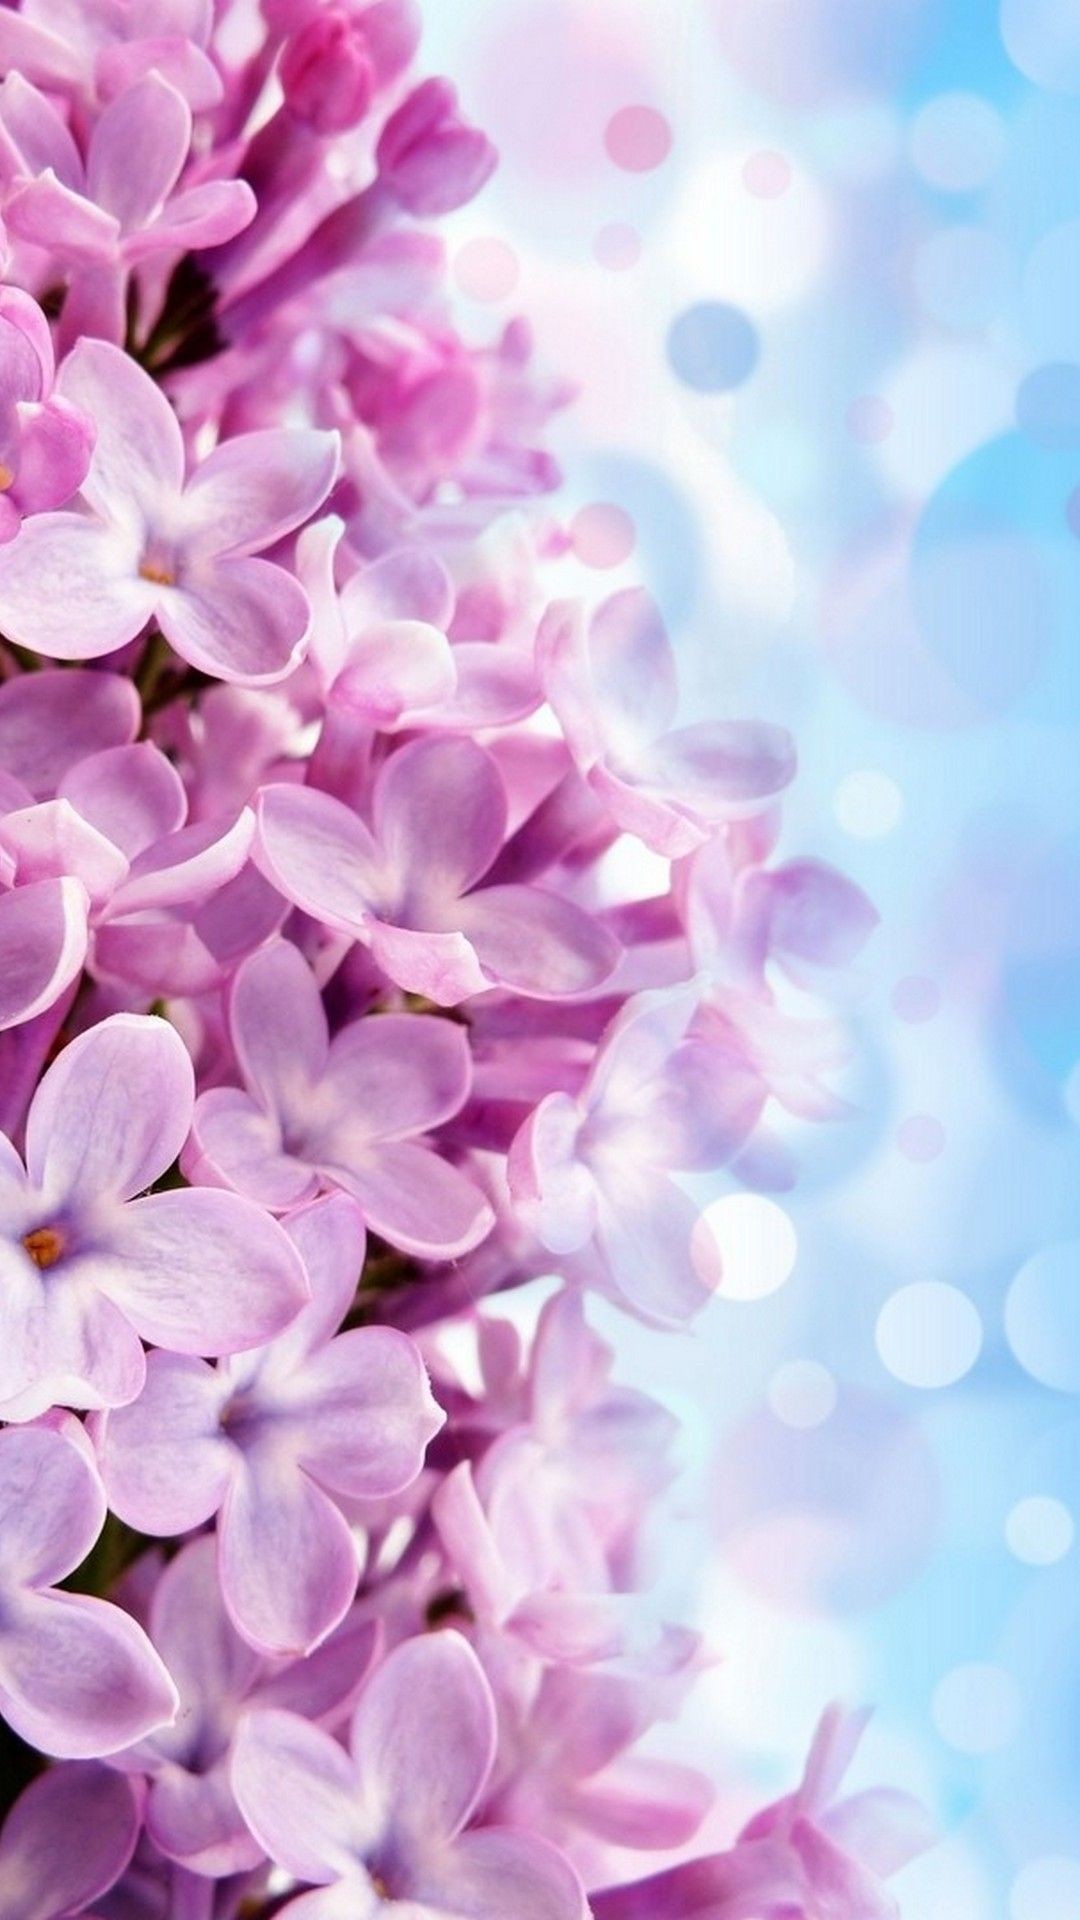 1080x1920 iPhone Wallpaper HD Purple Flowers | Best HD Wallpapers